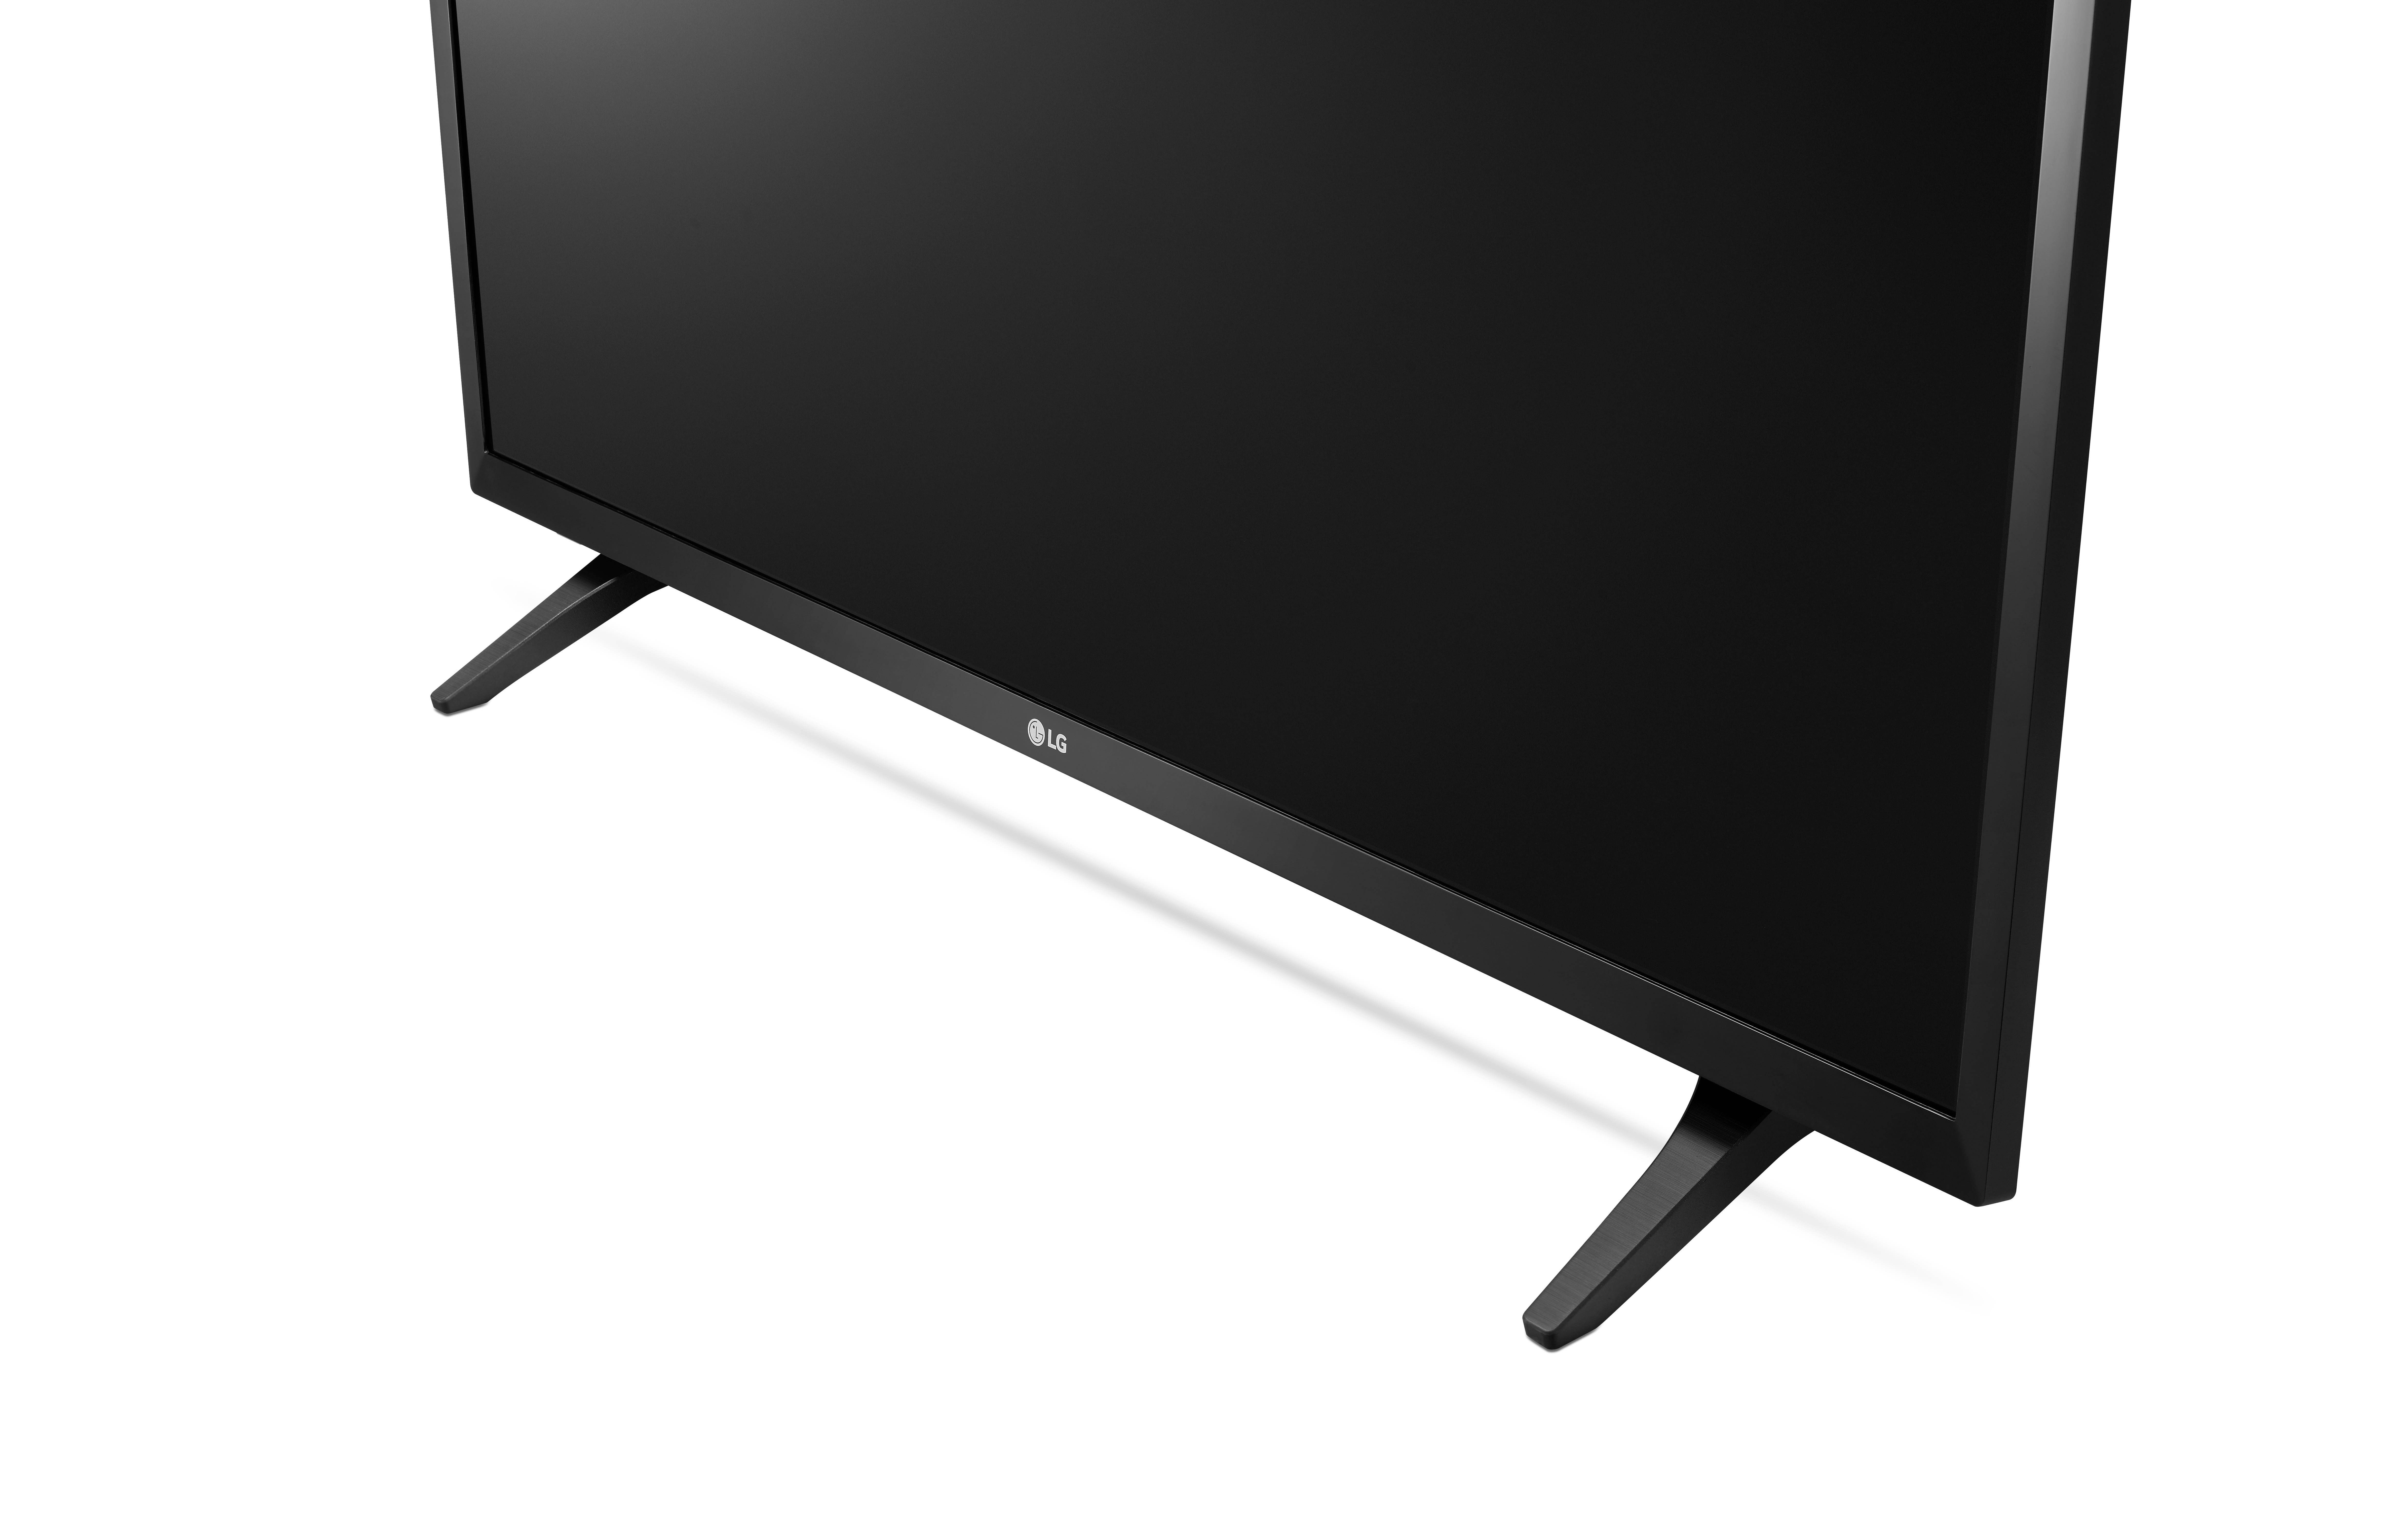 Smart TV 32 HD LG 32LJ600B